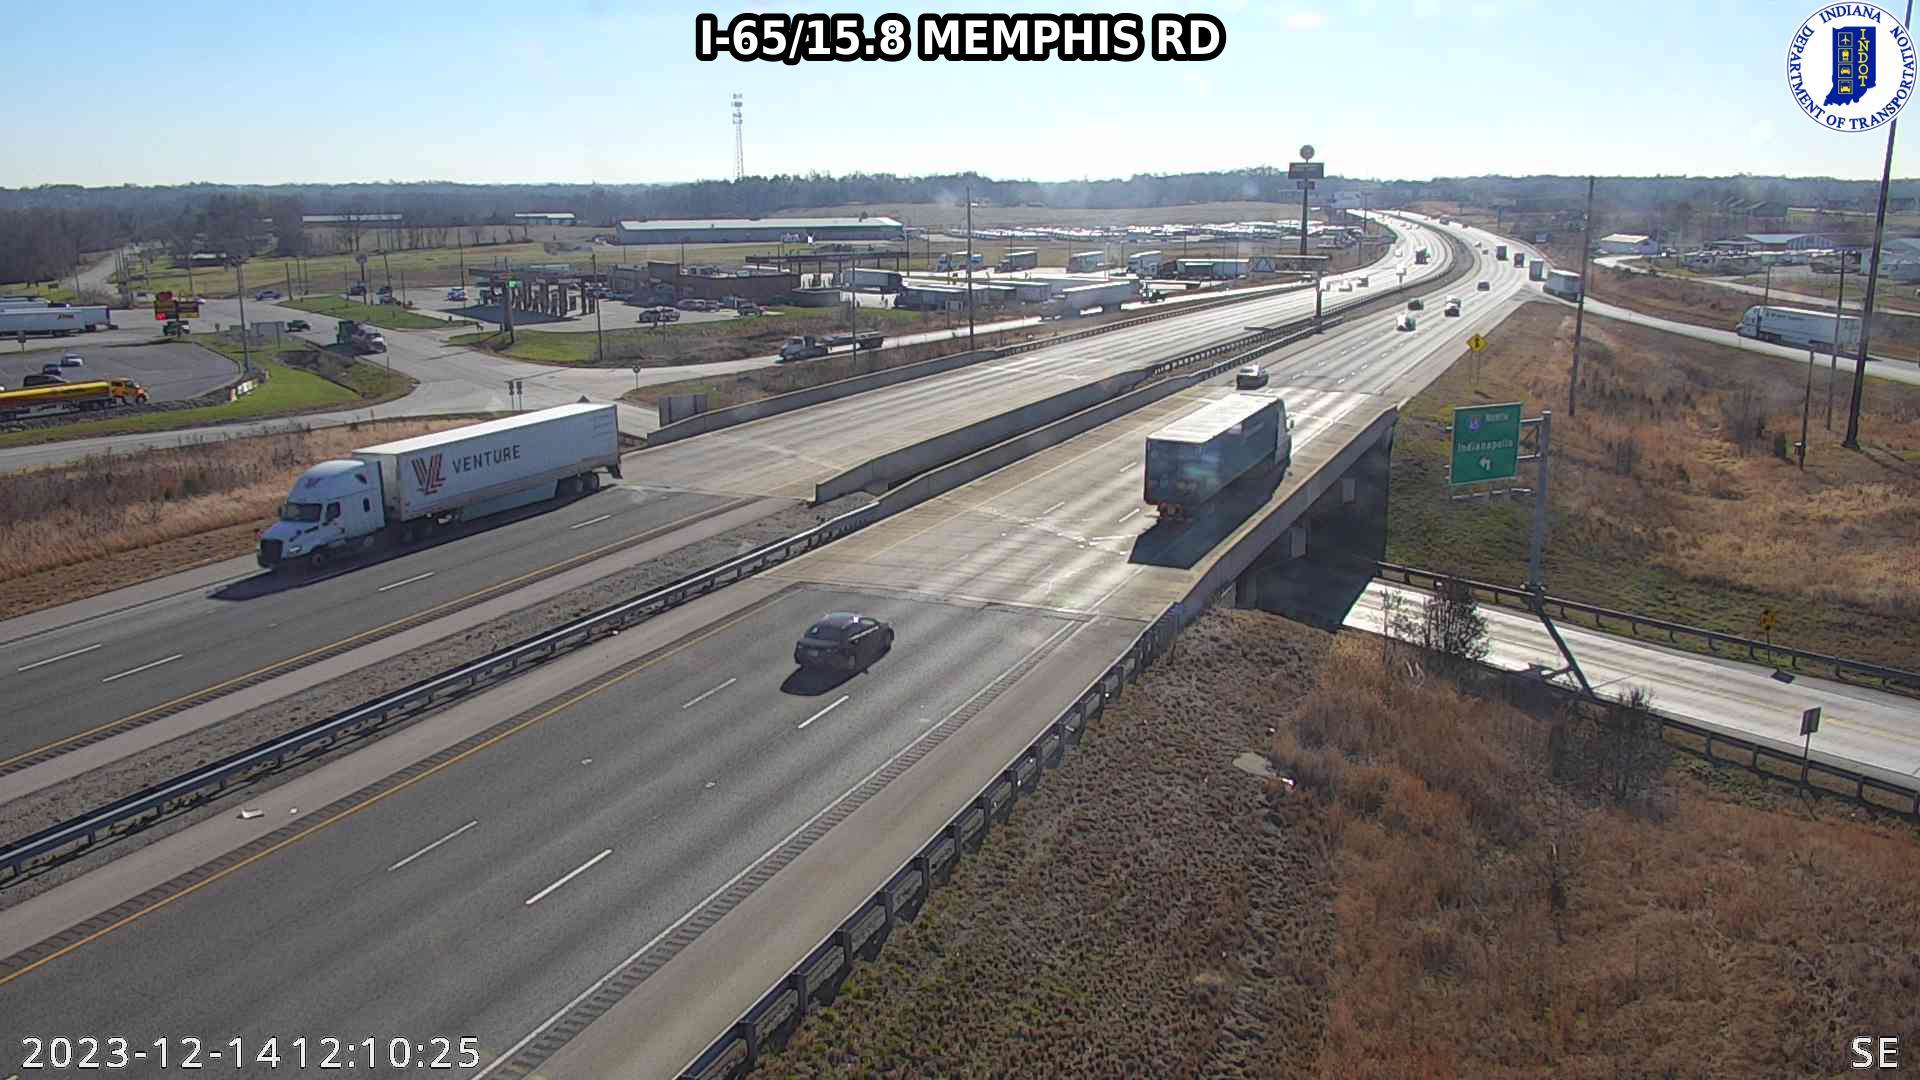 Traffic Cam Memphis: I-65: I-65/15.8 - RD : I-65/15.8 - RD Player